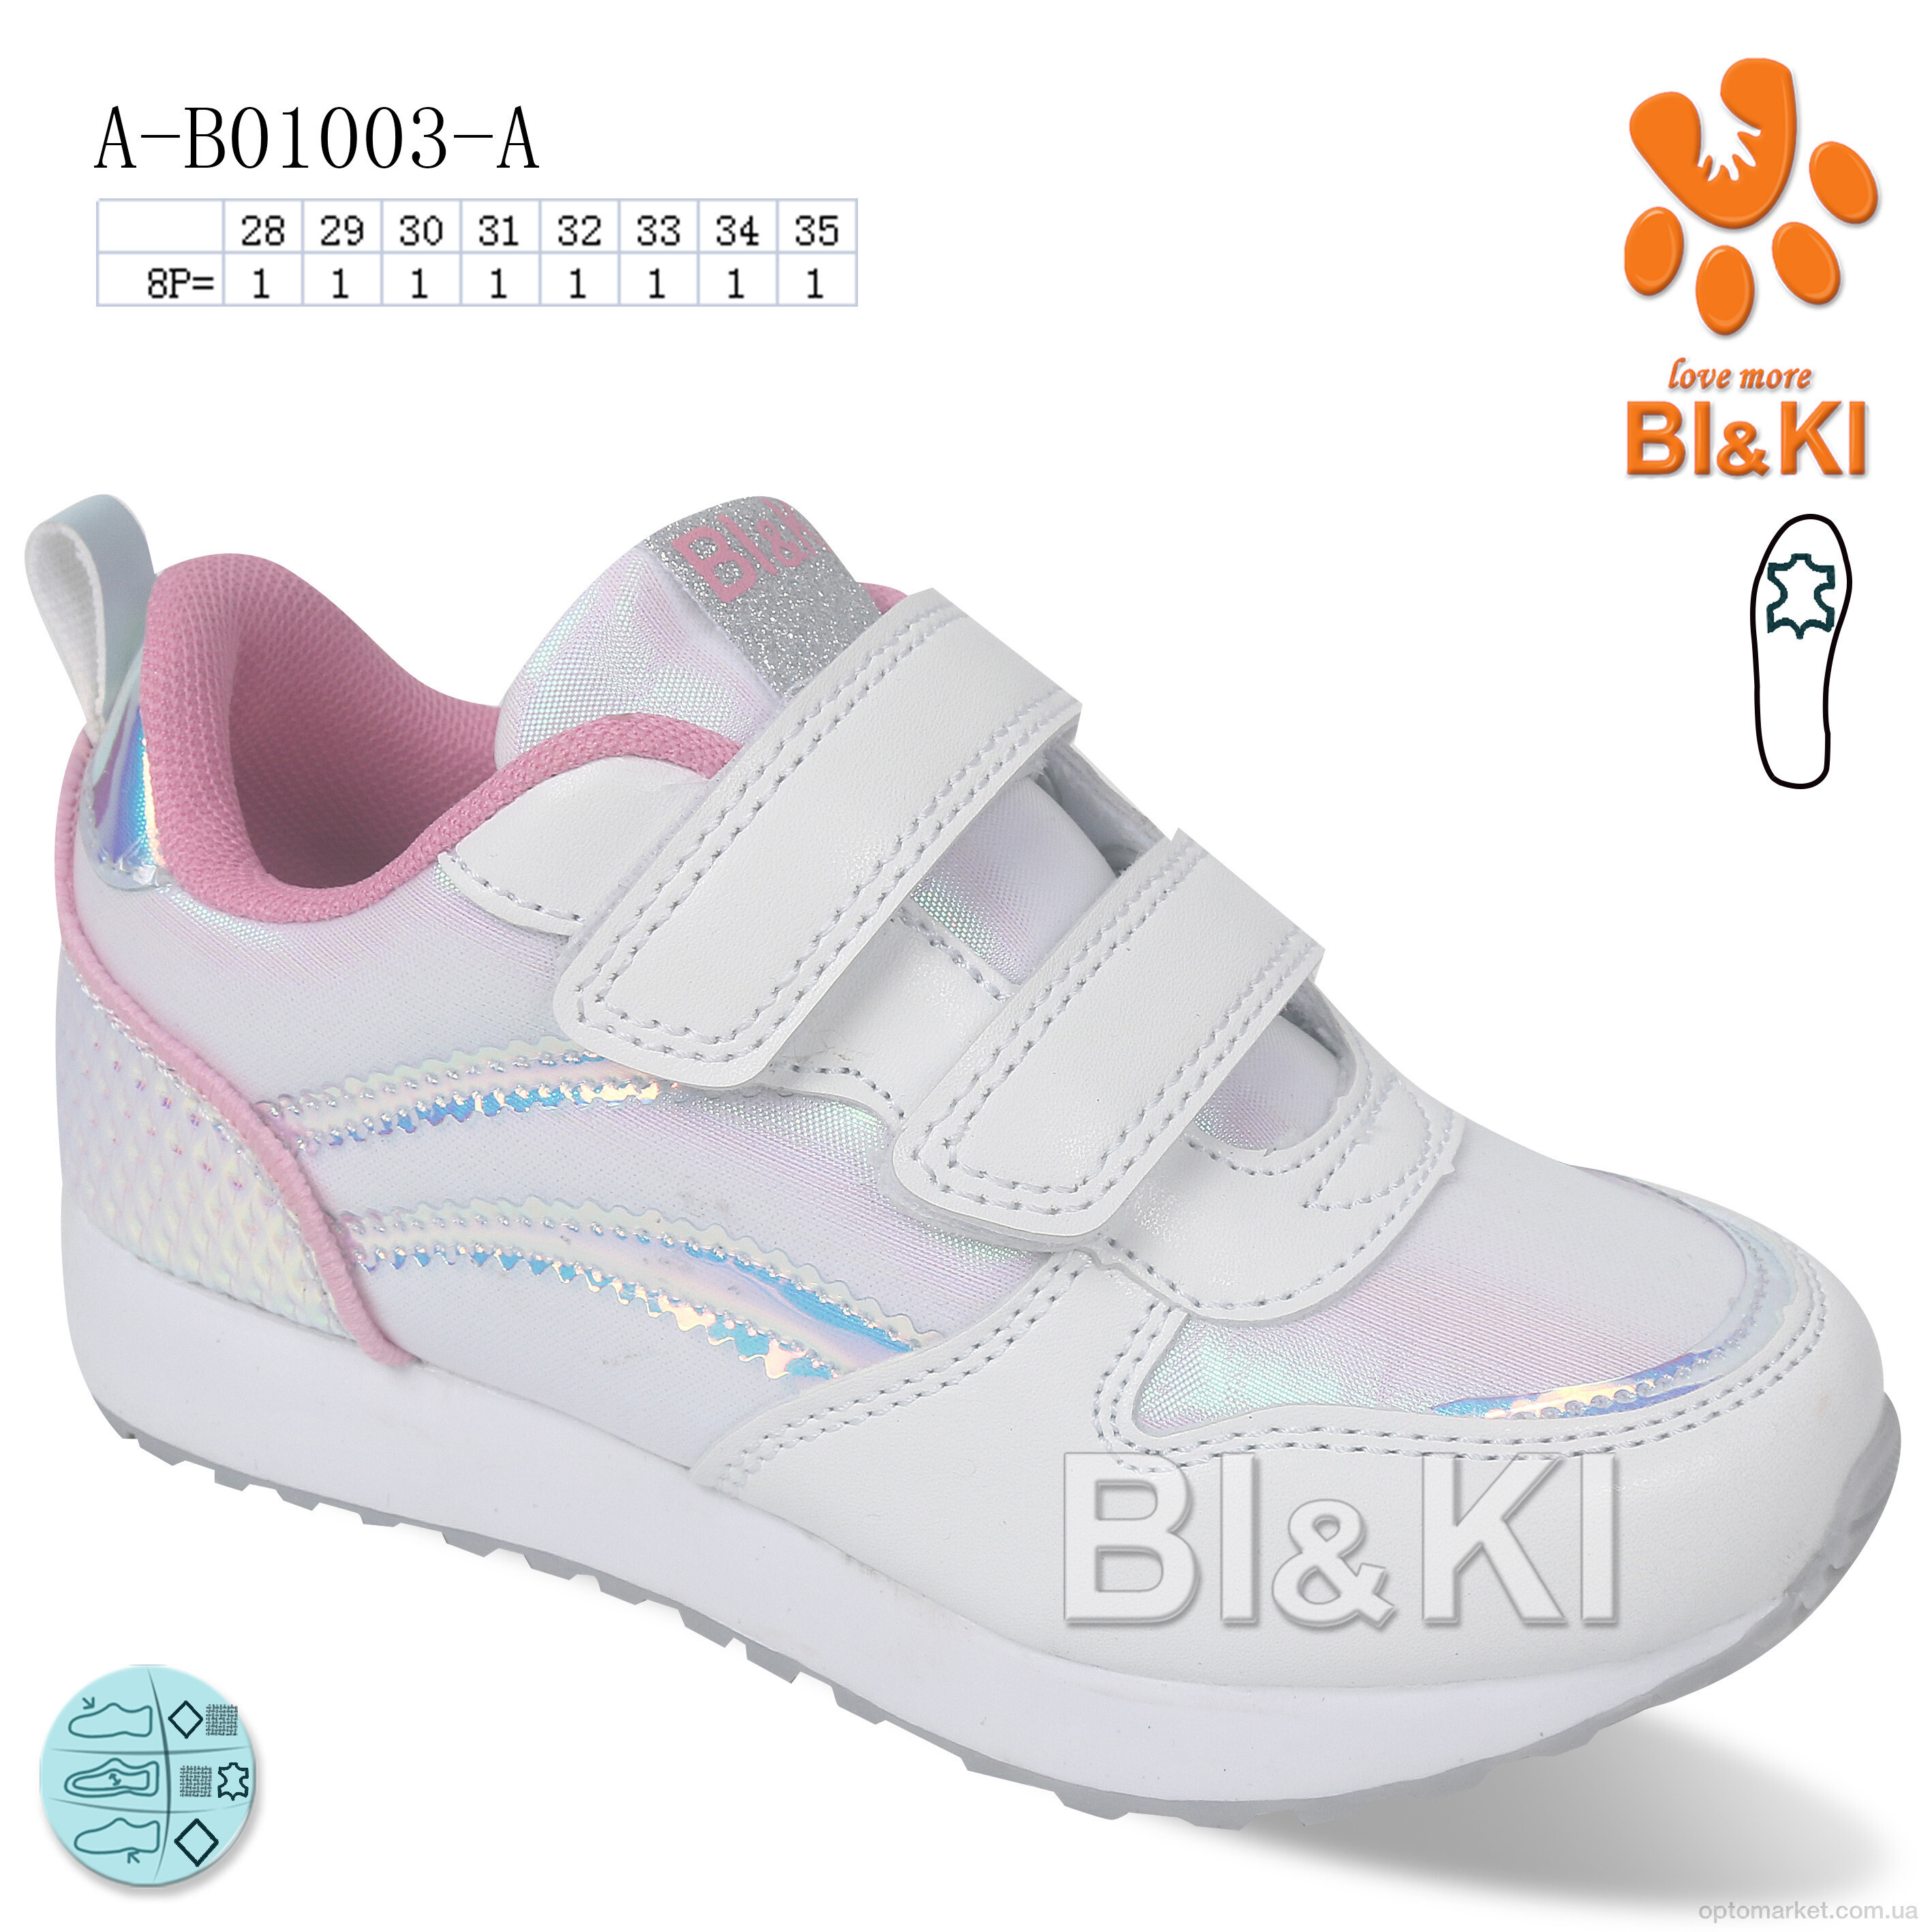 Купить Кросівки дитячі A-B01003-A Bi&Ki білий, фото 1